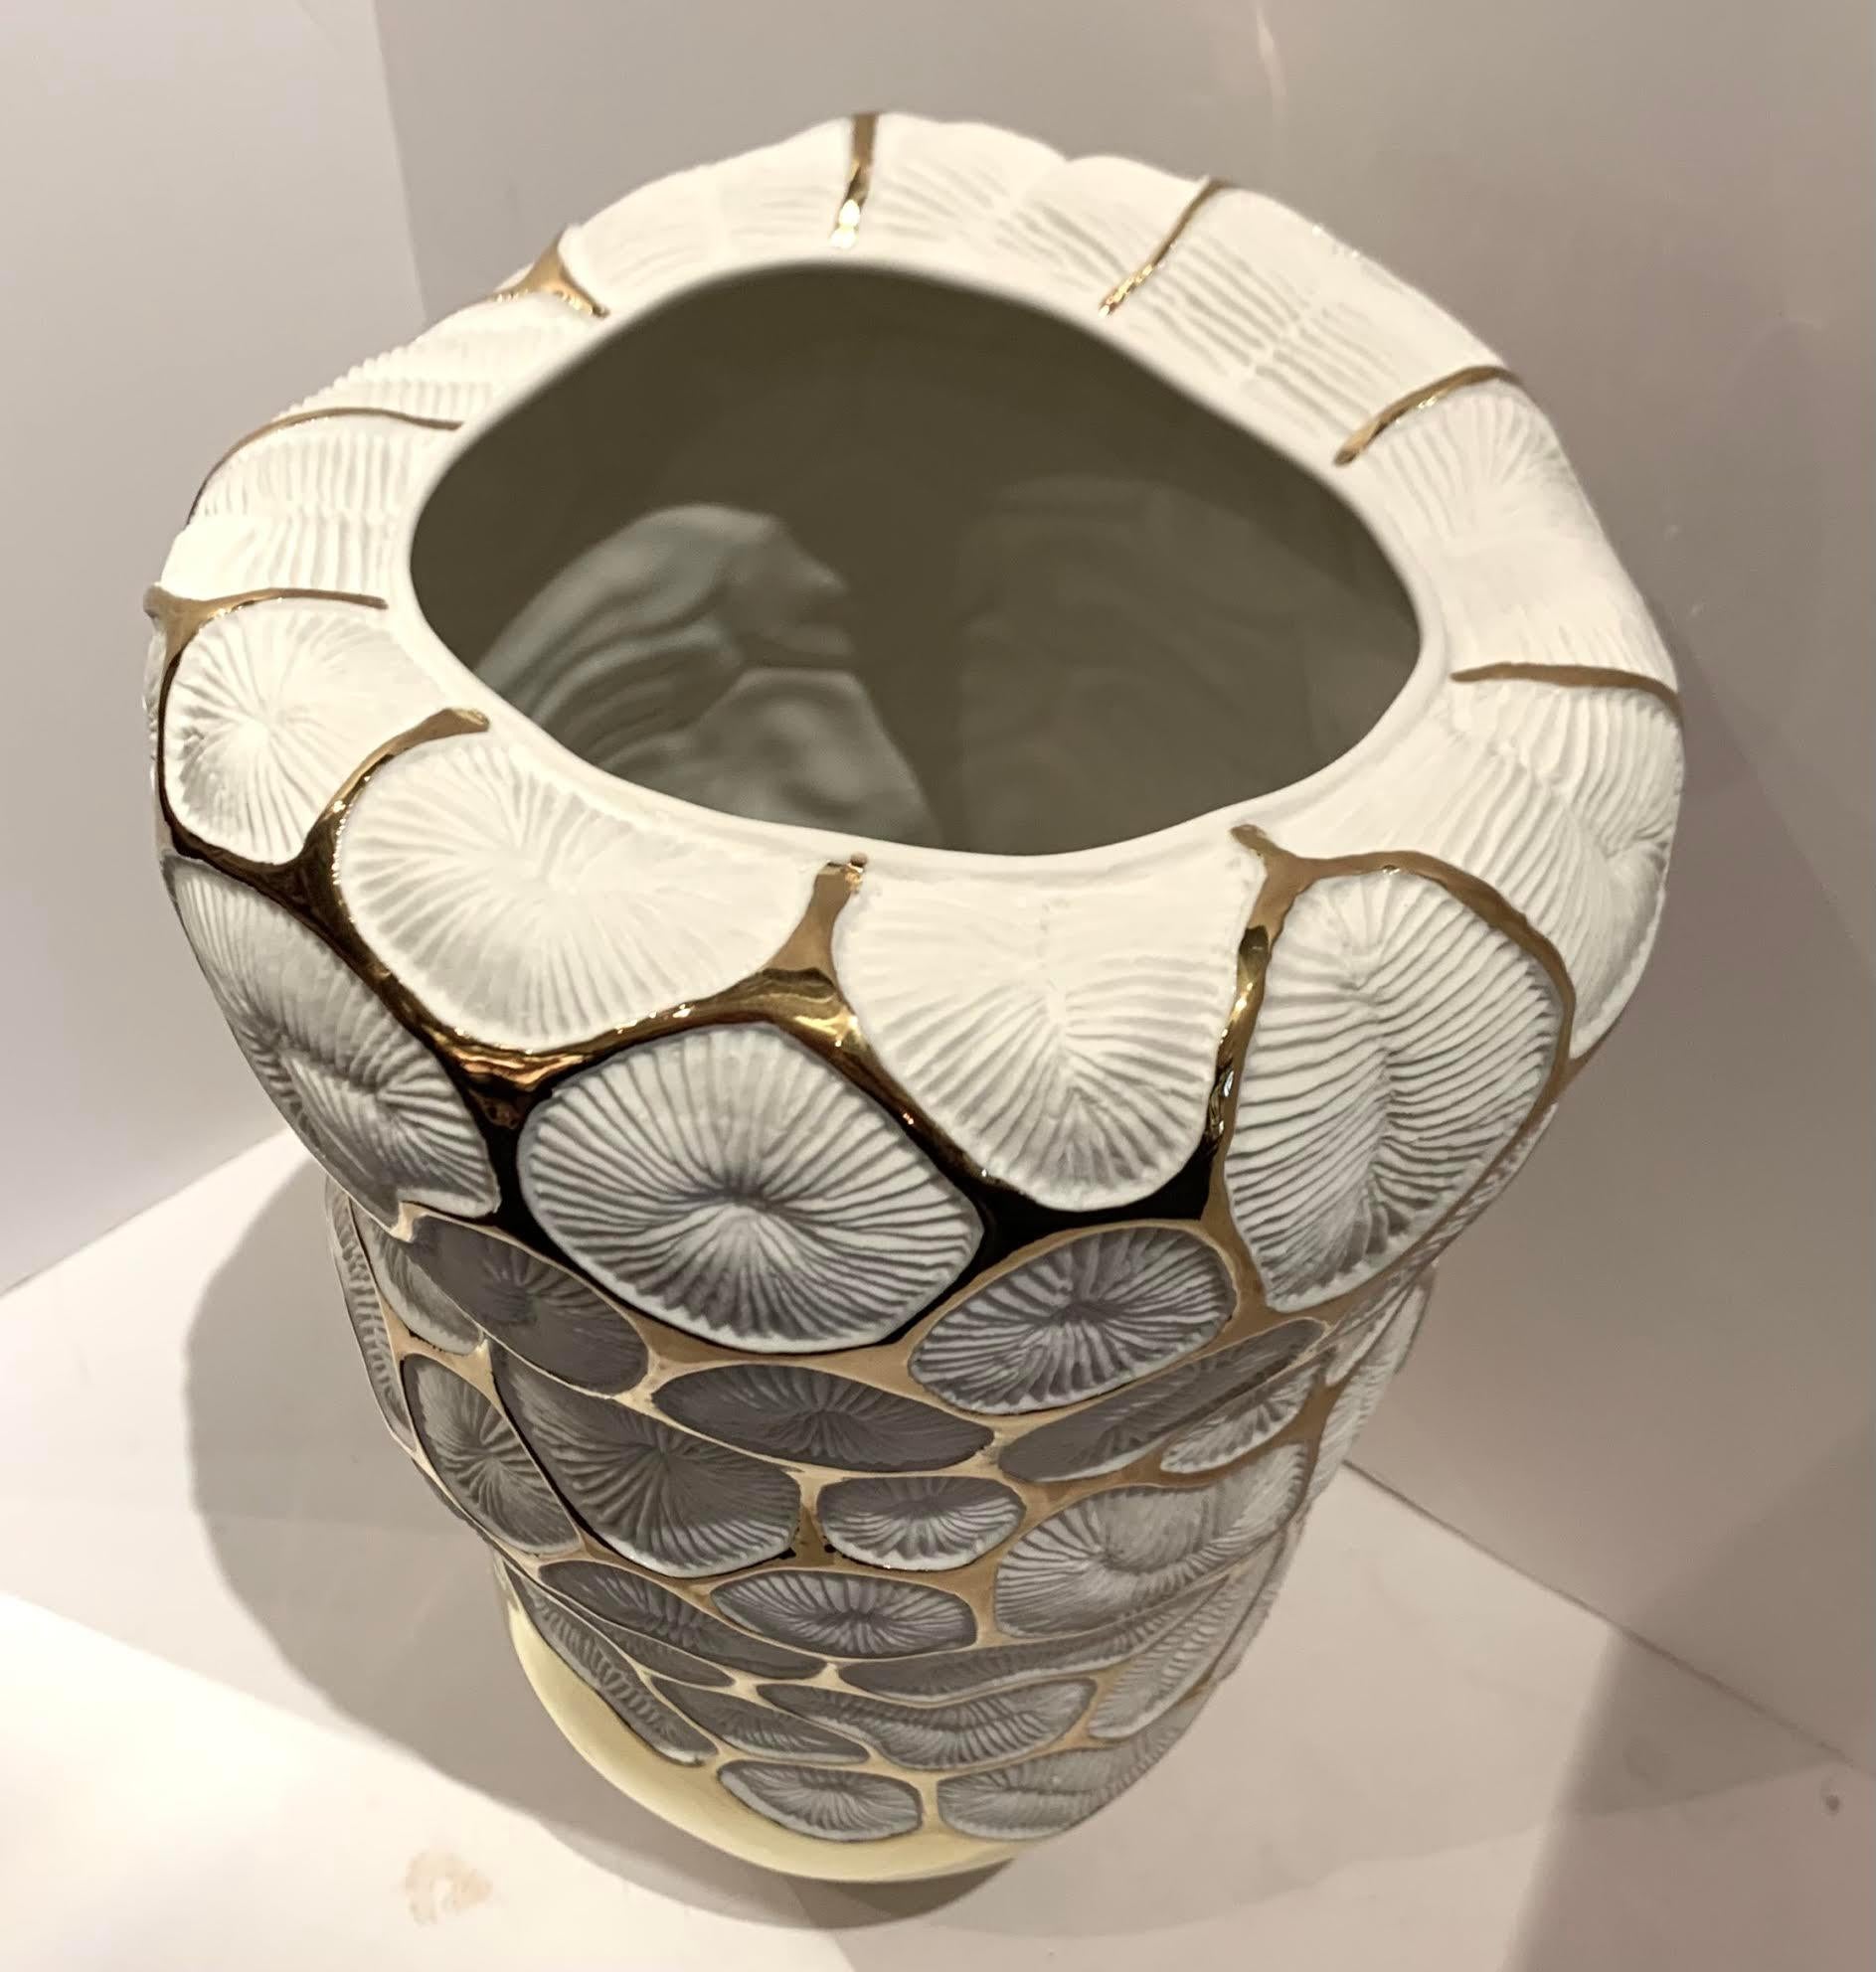 Grand vase contemporain en porcelaine blanche italienne avec accents en or 22K.
Motif corallien décoratif.